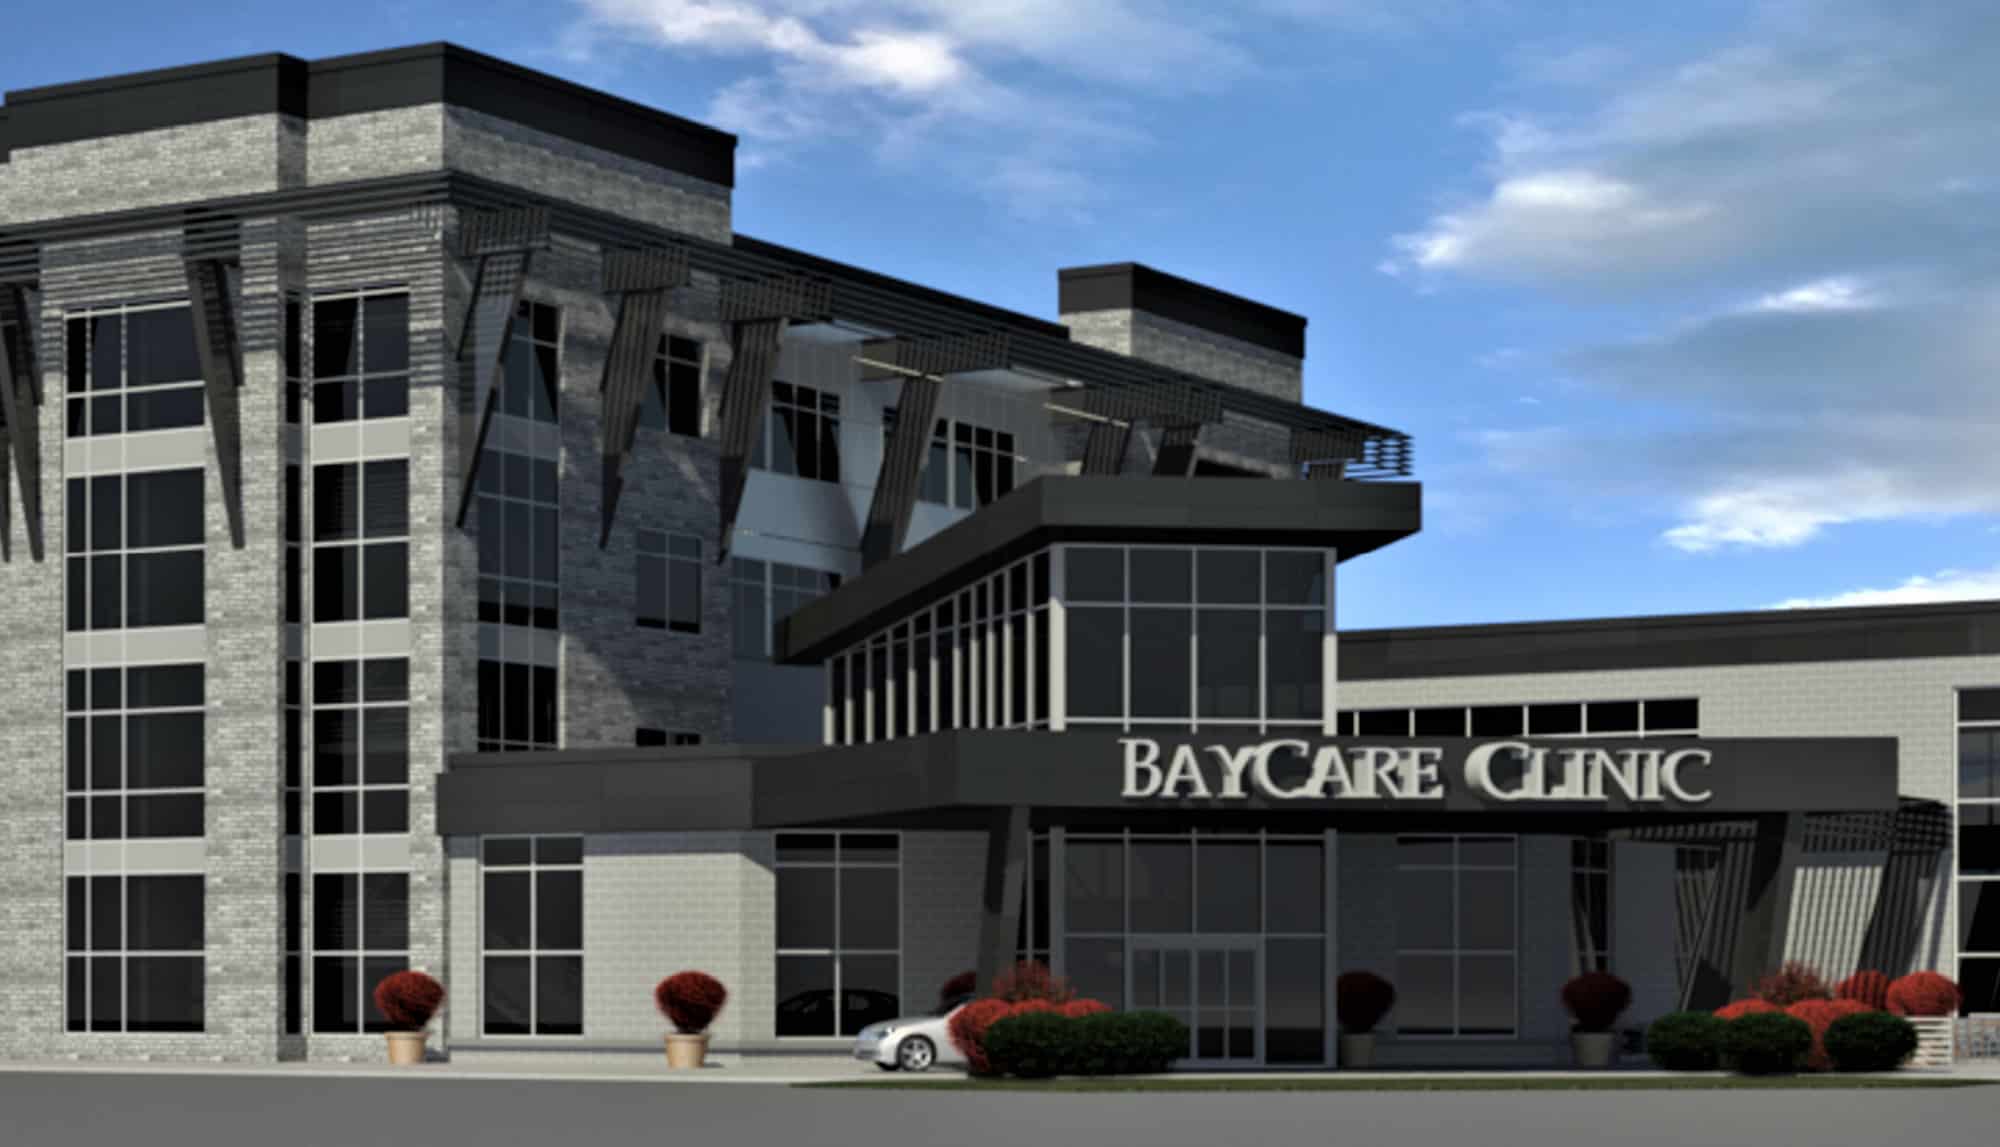 Baycare Clinic